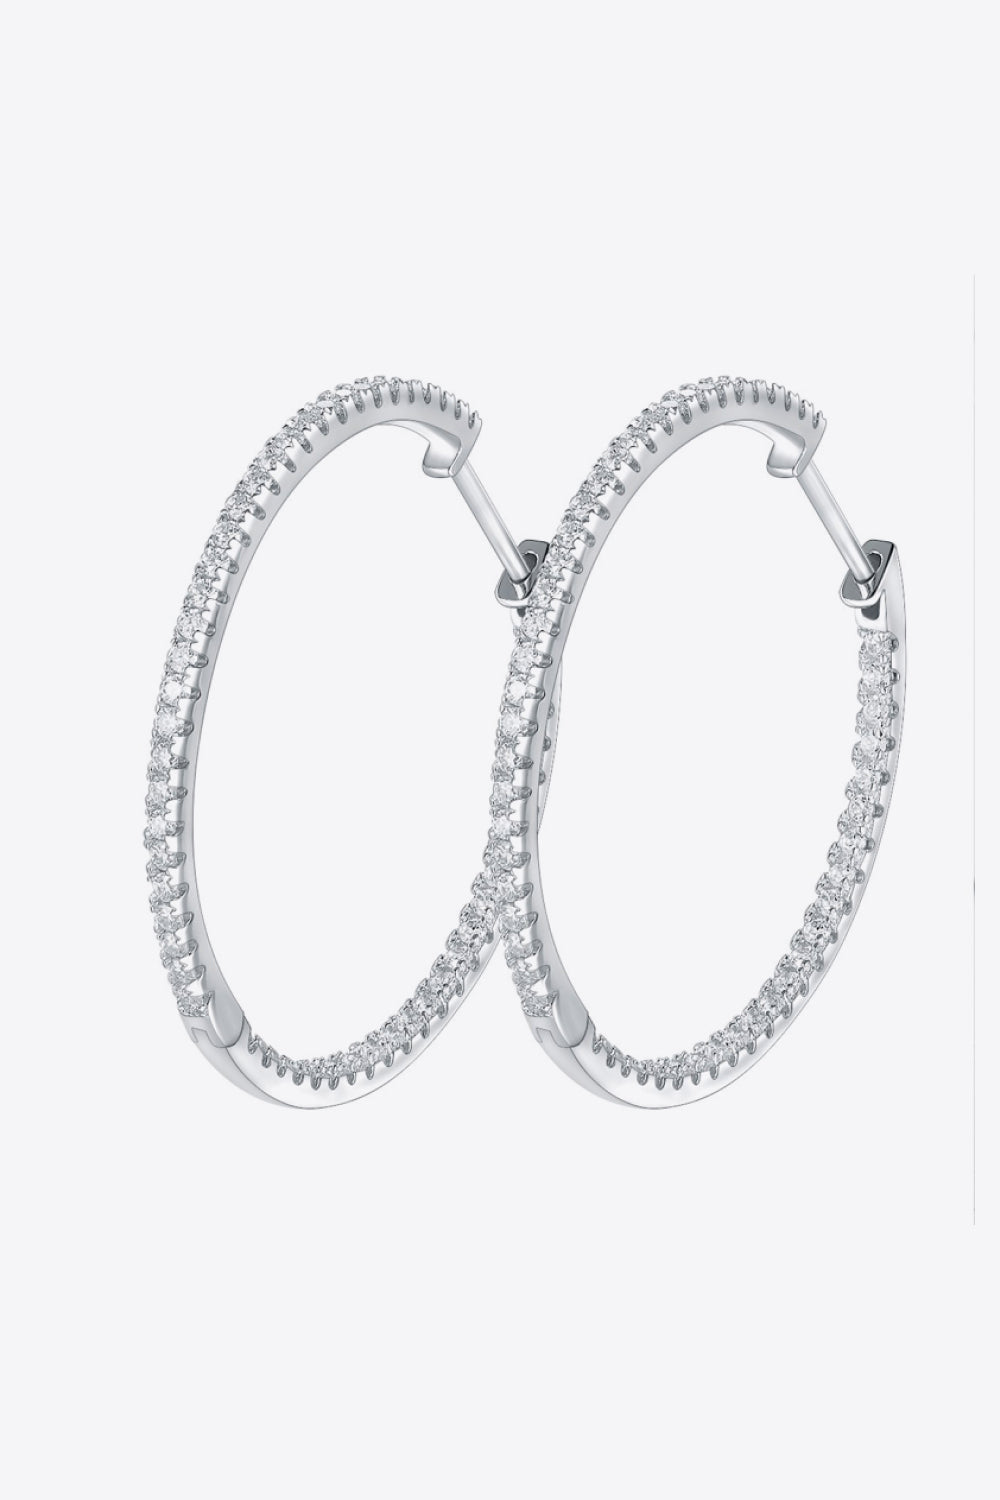 Women’s Inlaid Moissanite 925 Sterling Silver Hoop Earrings